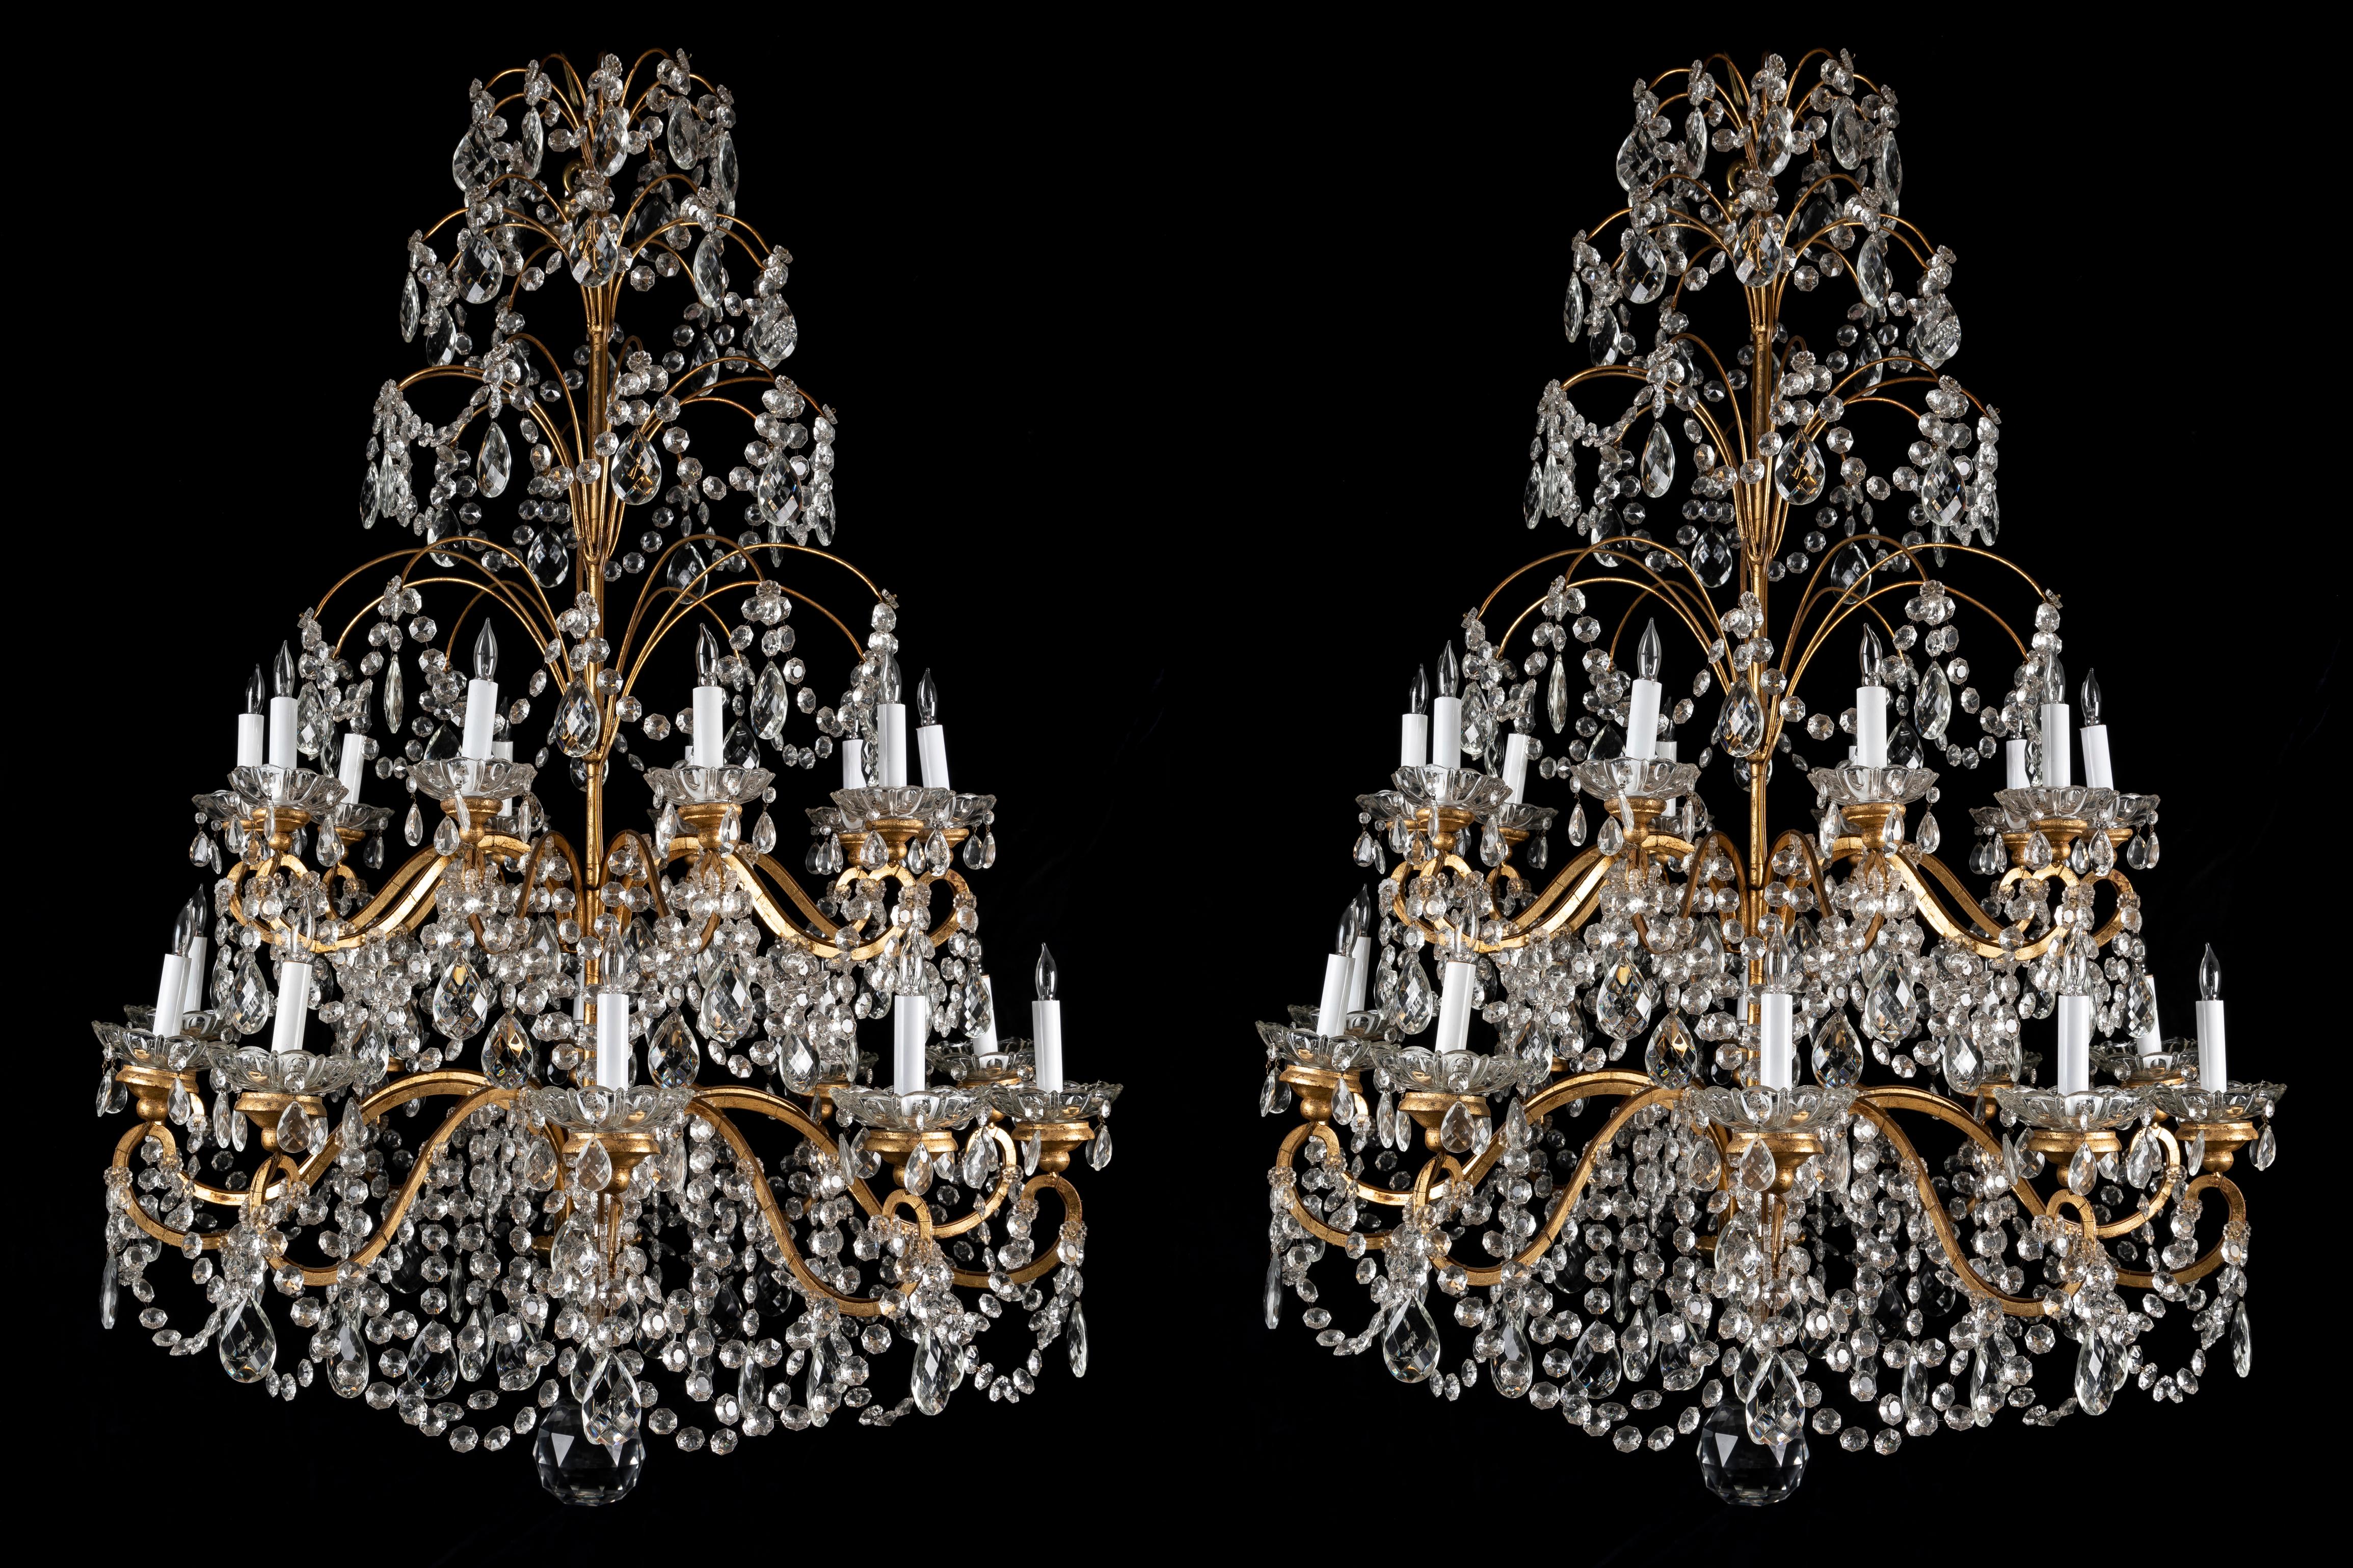 Ein wunderschönes Paar sehr großer französischer Kronleuchter im Louis-XVI-Stil mit 20 Lichtern aus vergoldeter Bronze, Holz und Kristall von hervorragender Verarbeitung. Jeder Kronleuchter mit zwanzig Lichtern ist mit verschnörkelten Armen verziert